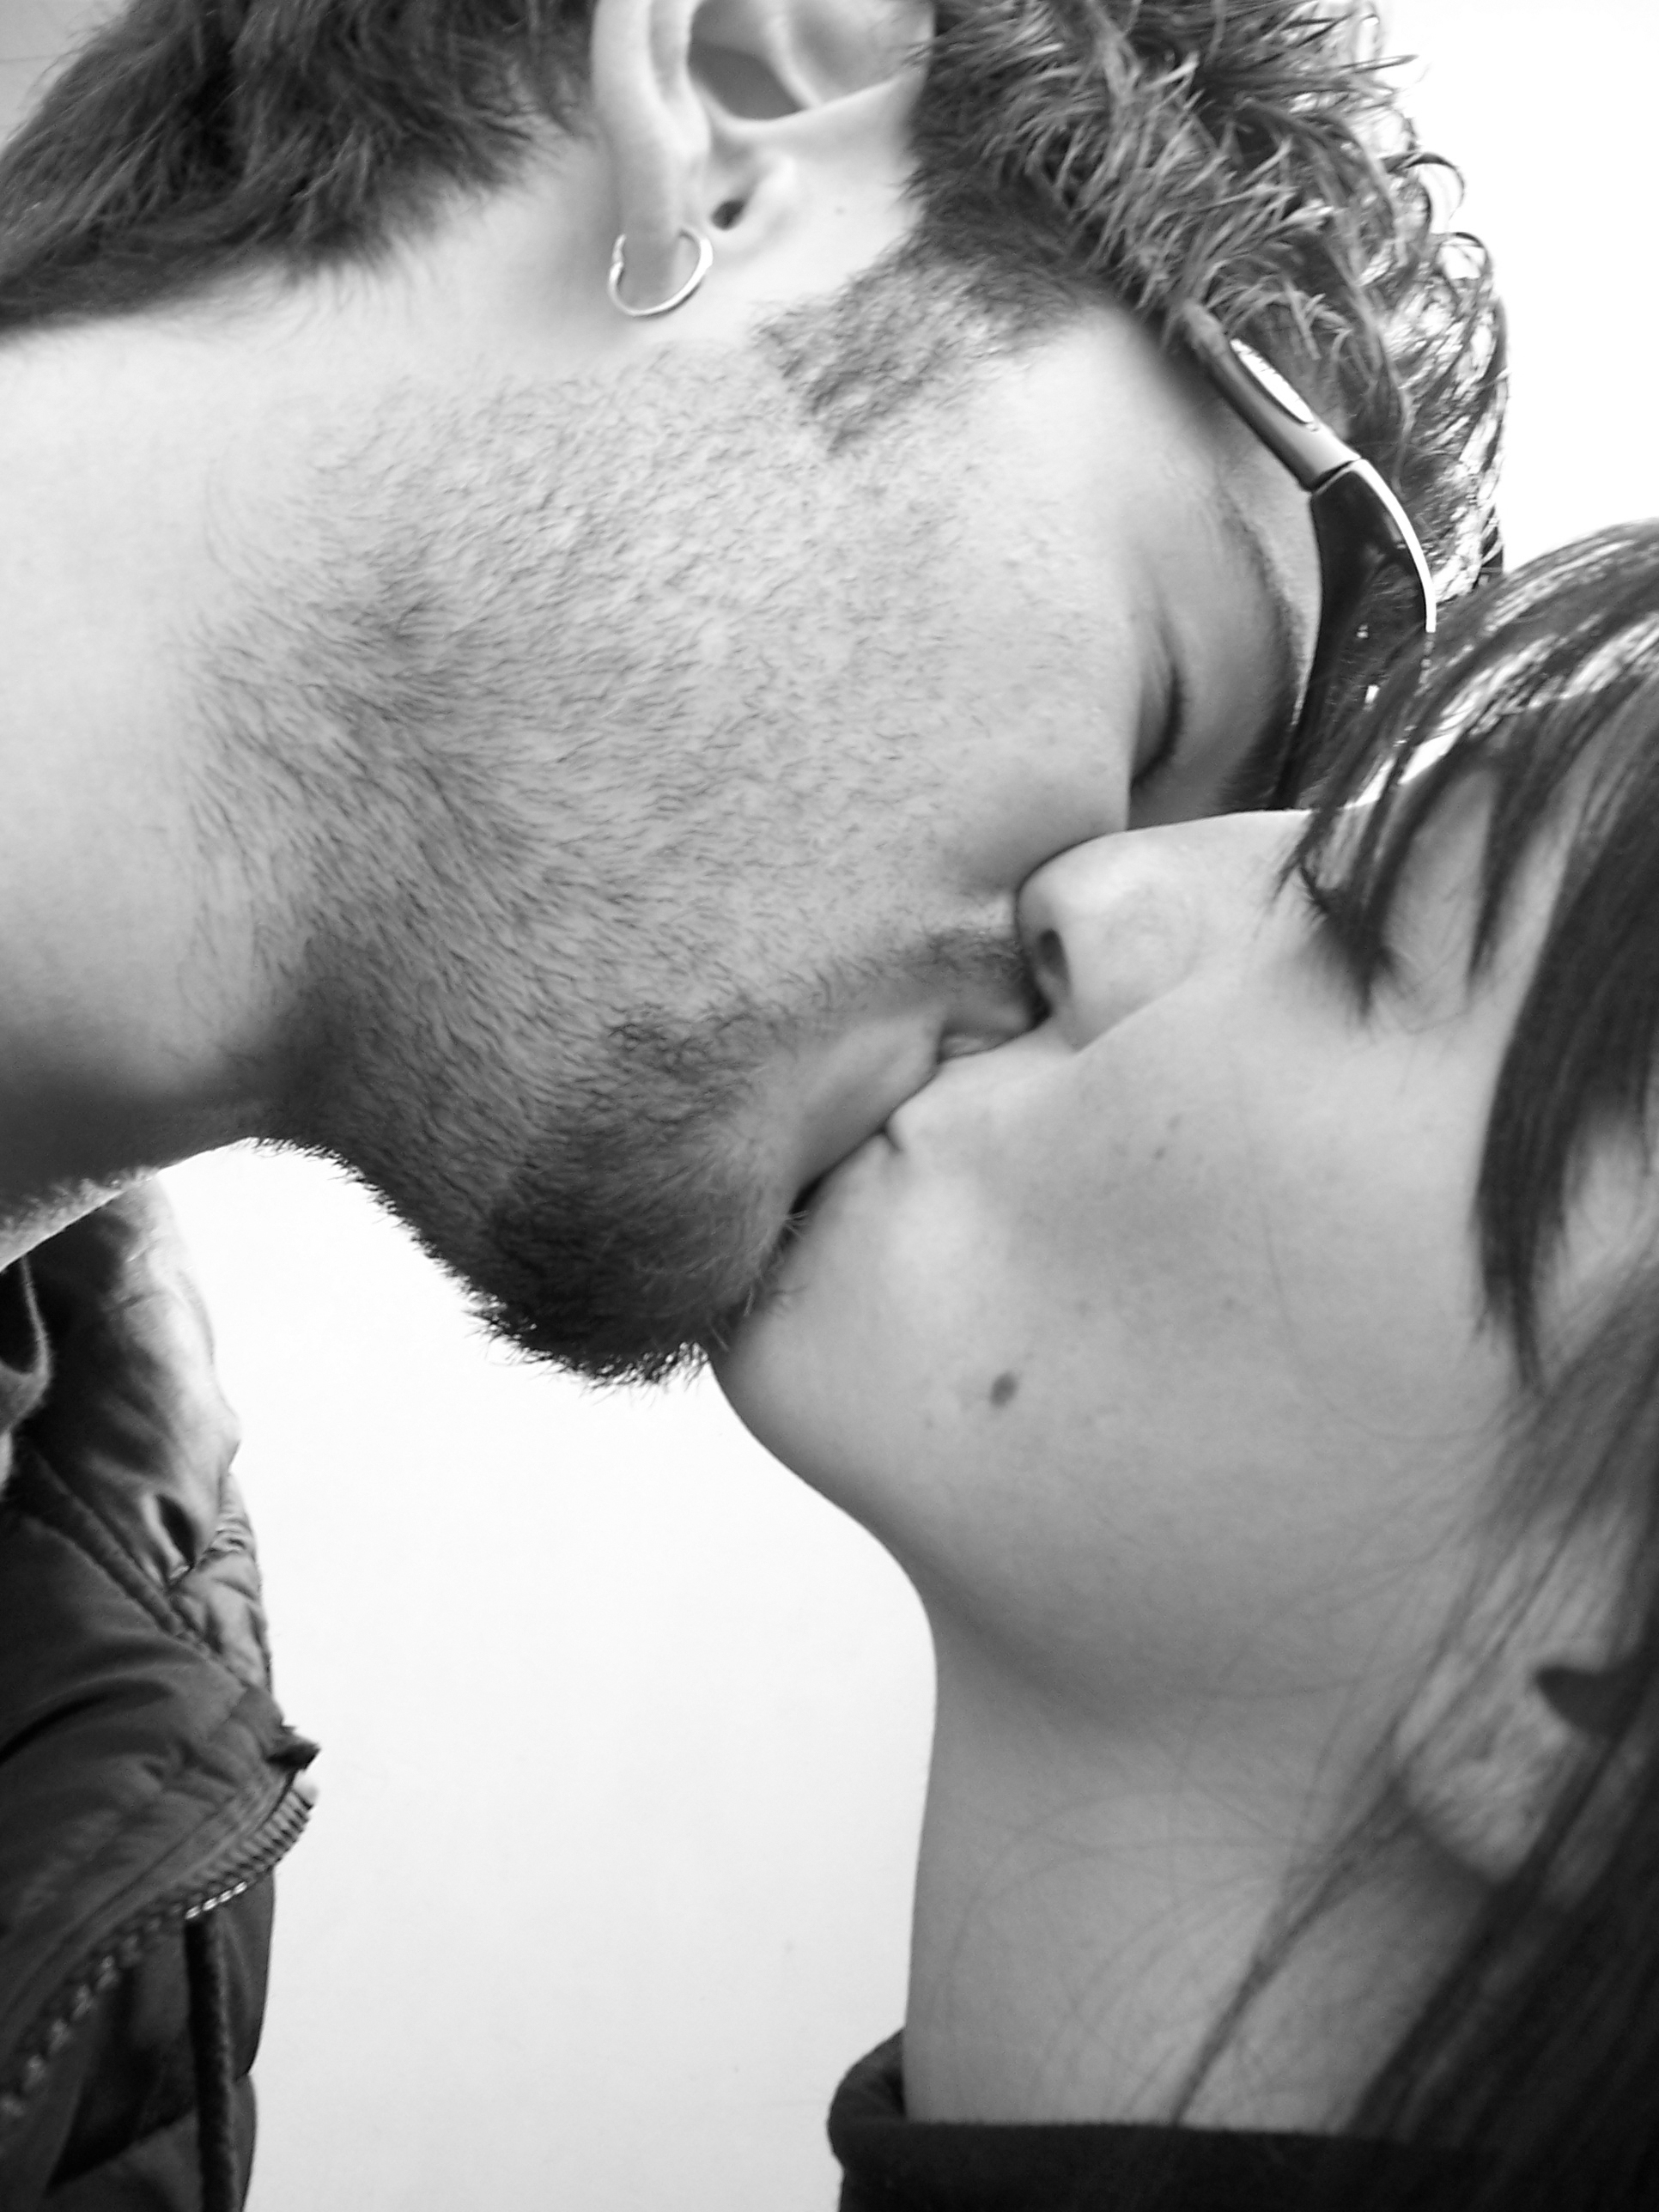 губы поцелуй картинки красивые для мужчины фото